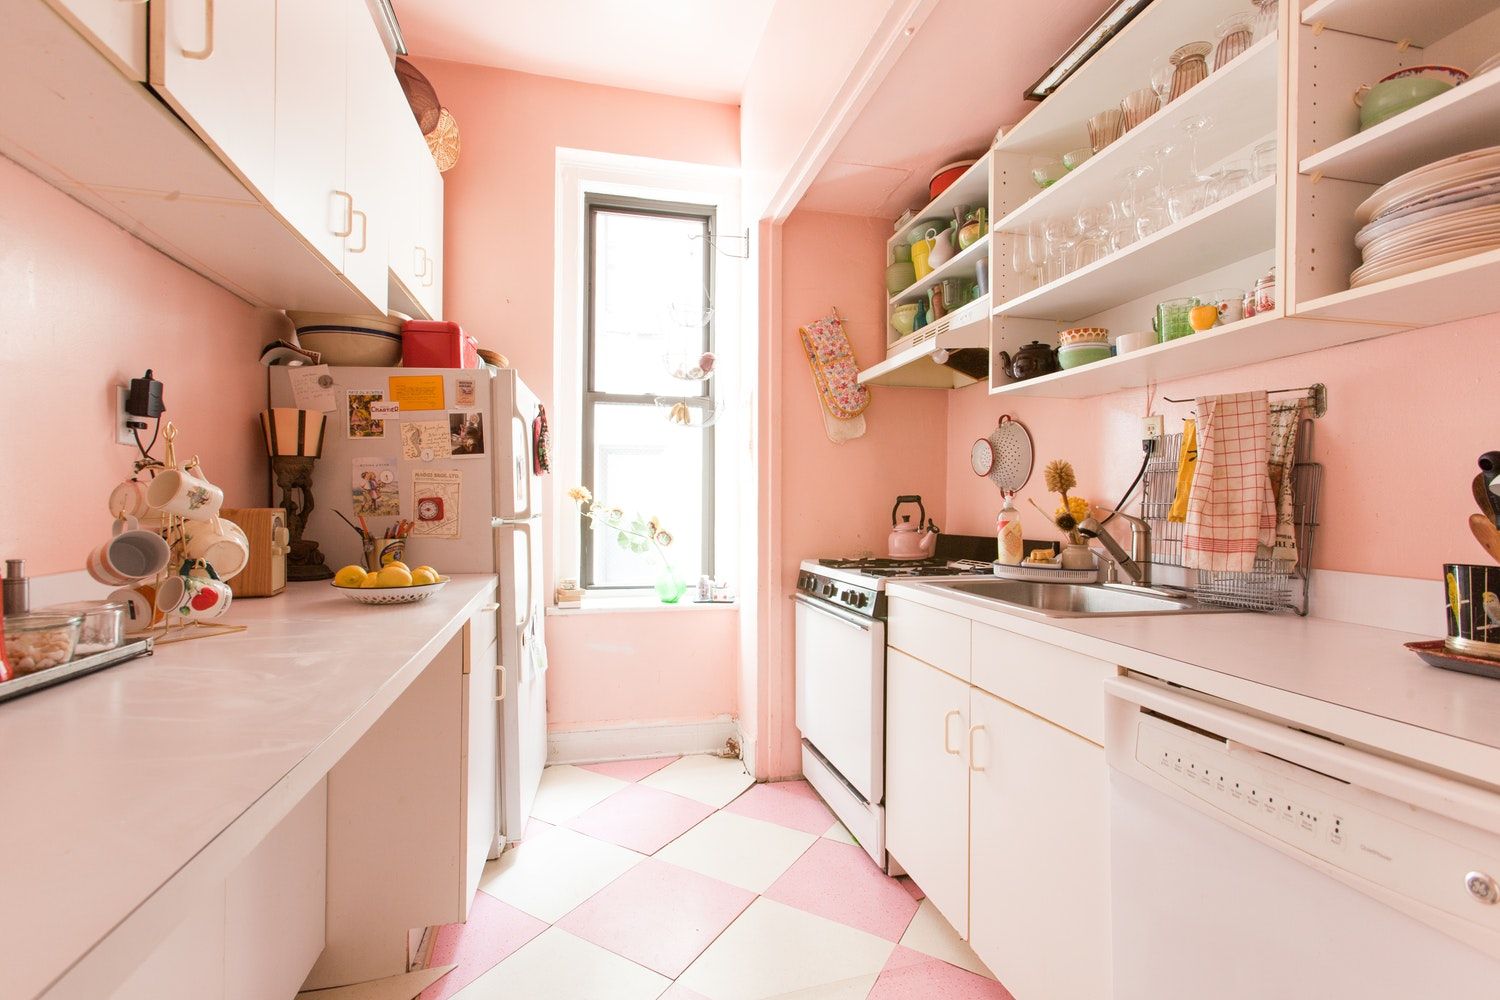 Sáng tạo với phòng bếp màu hồng 2024! Năm nay, nhà bếp của bạn sẽ trở thành một sự kết hợp tuyệt vời giữa cái mới và cổ điển. Sử dụng sắc hồng trang nhã, các phụ kiện in hoạt hình, và vật liệu đẹp mắt để tạo ra một không gian độc đáo và vui tươi.